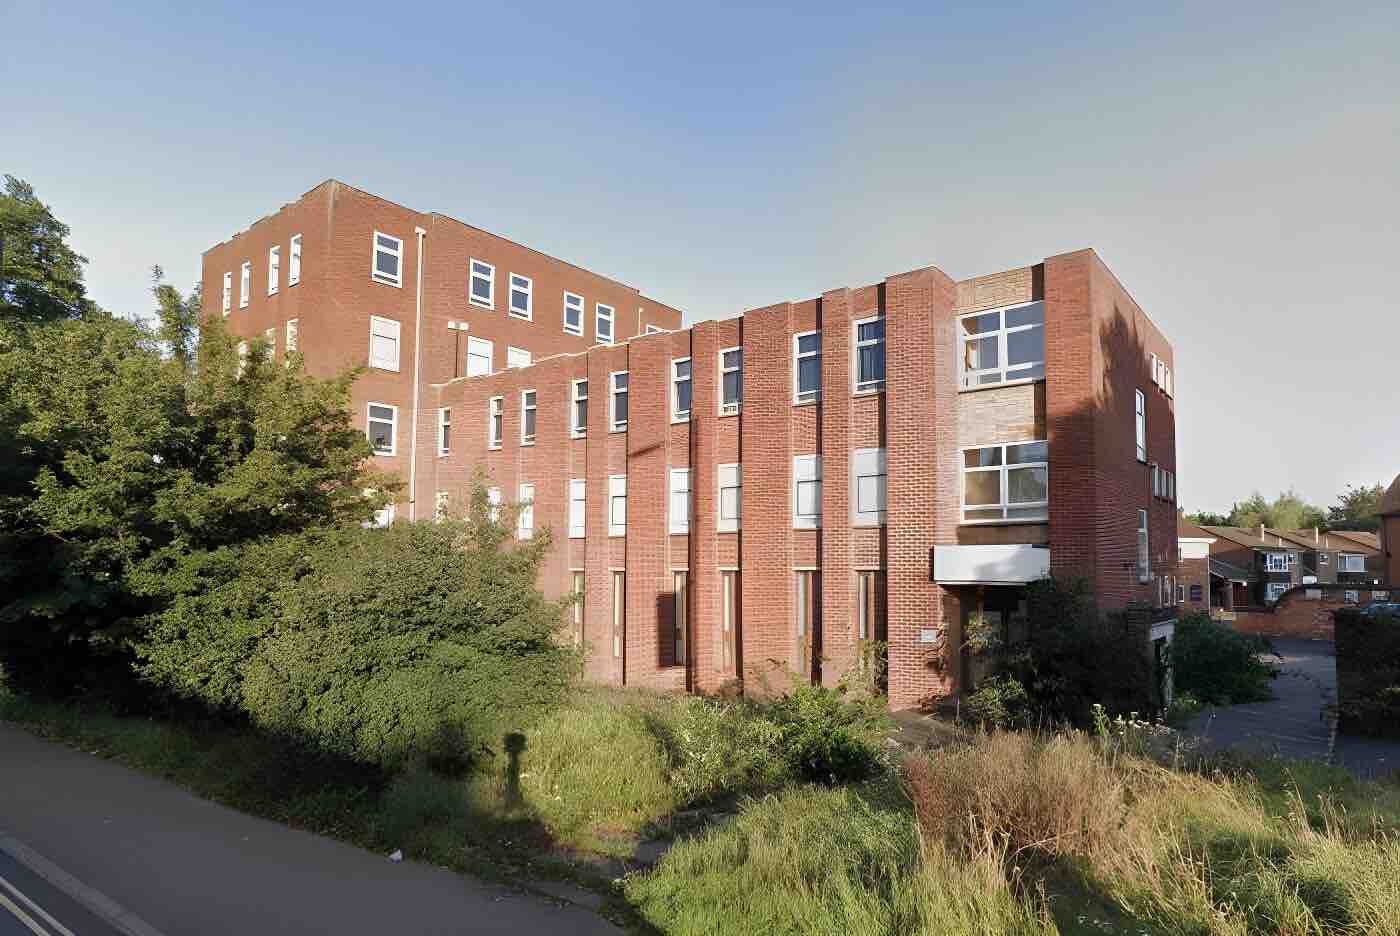 30 Apartments for Leighton Buzzard, Bedfordshire, LU7